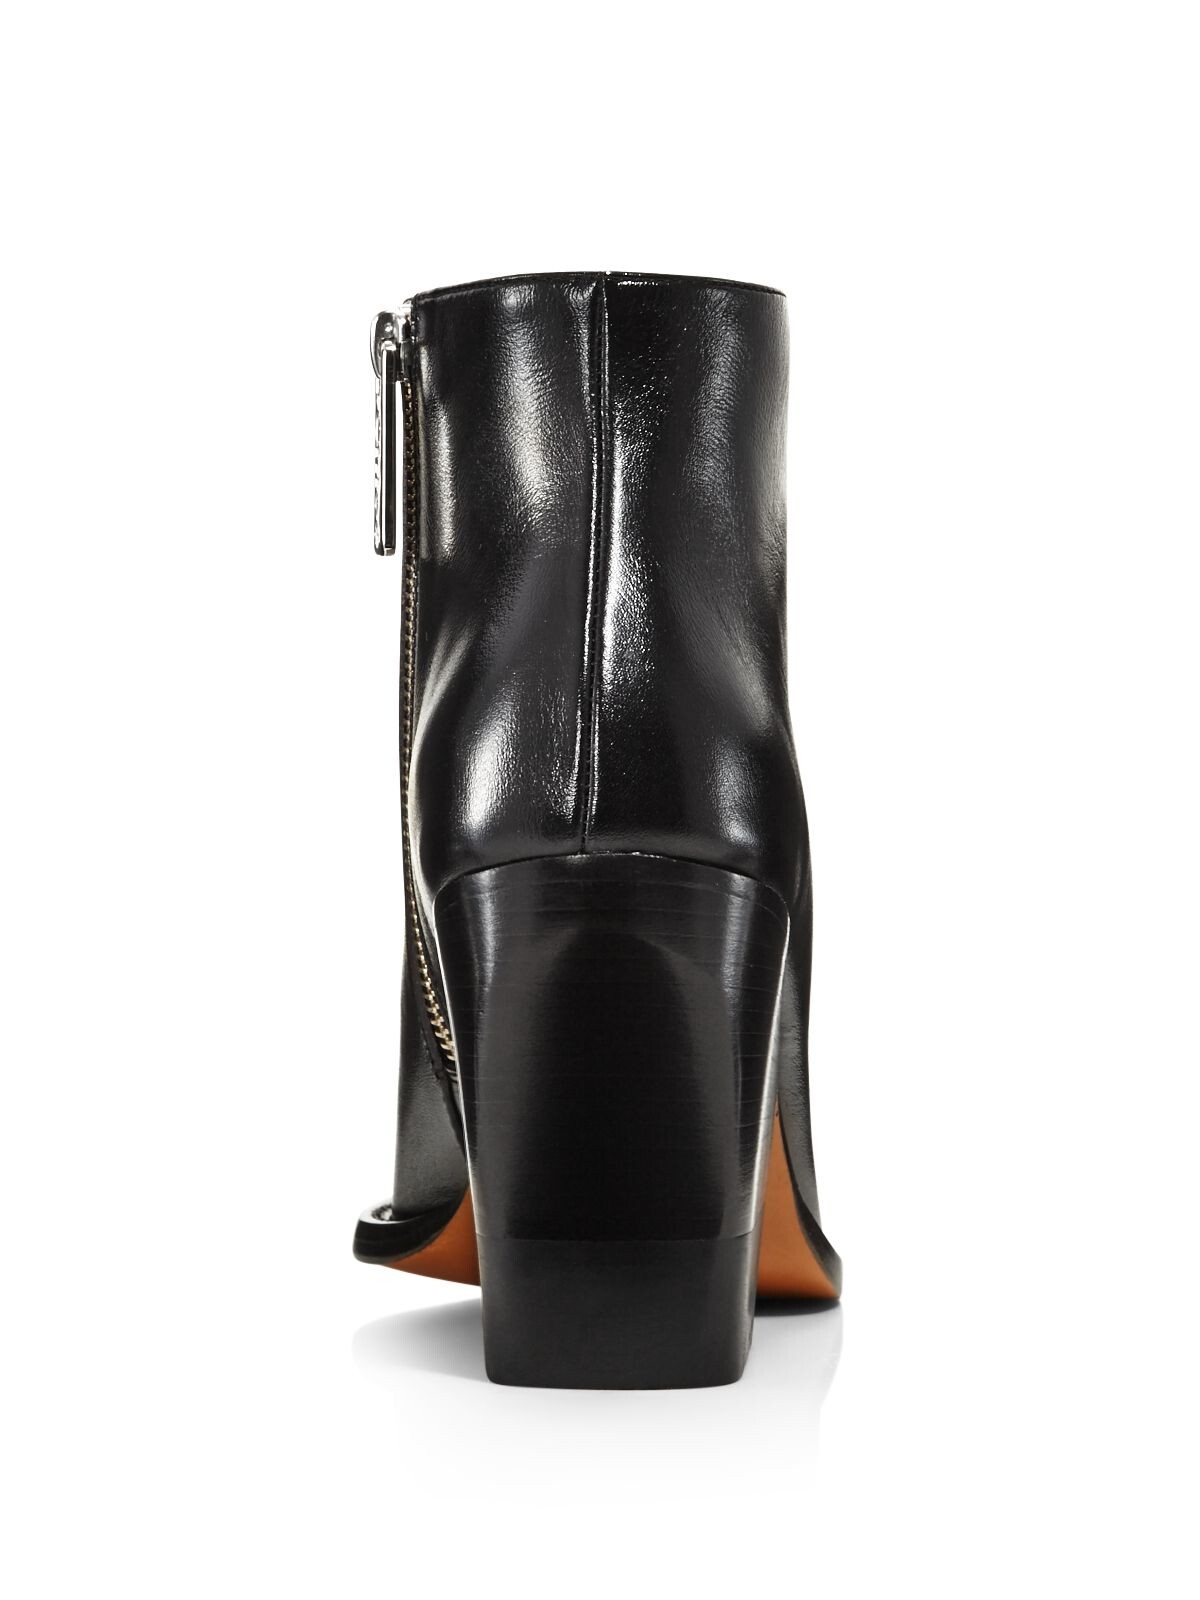 CHLOE Womens Black Padded Rylee Almond Toe Block Heel Zip-Up Leather Booties 38.5